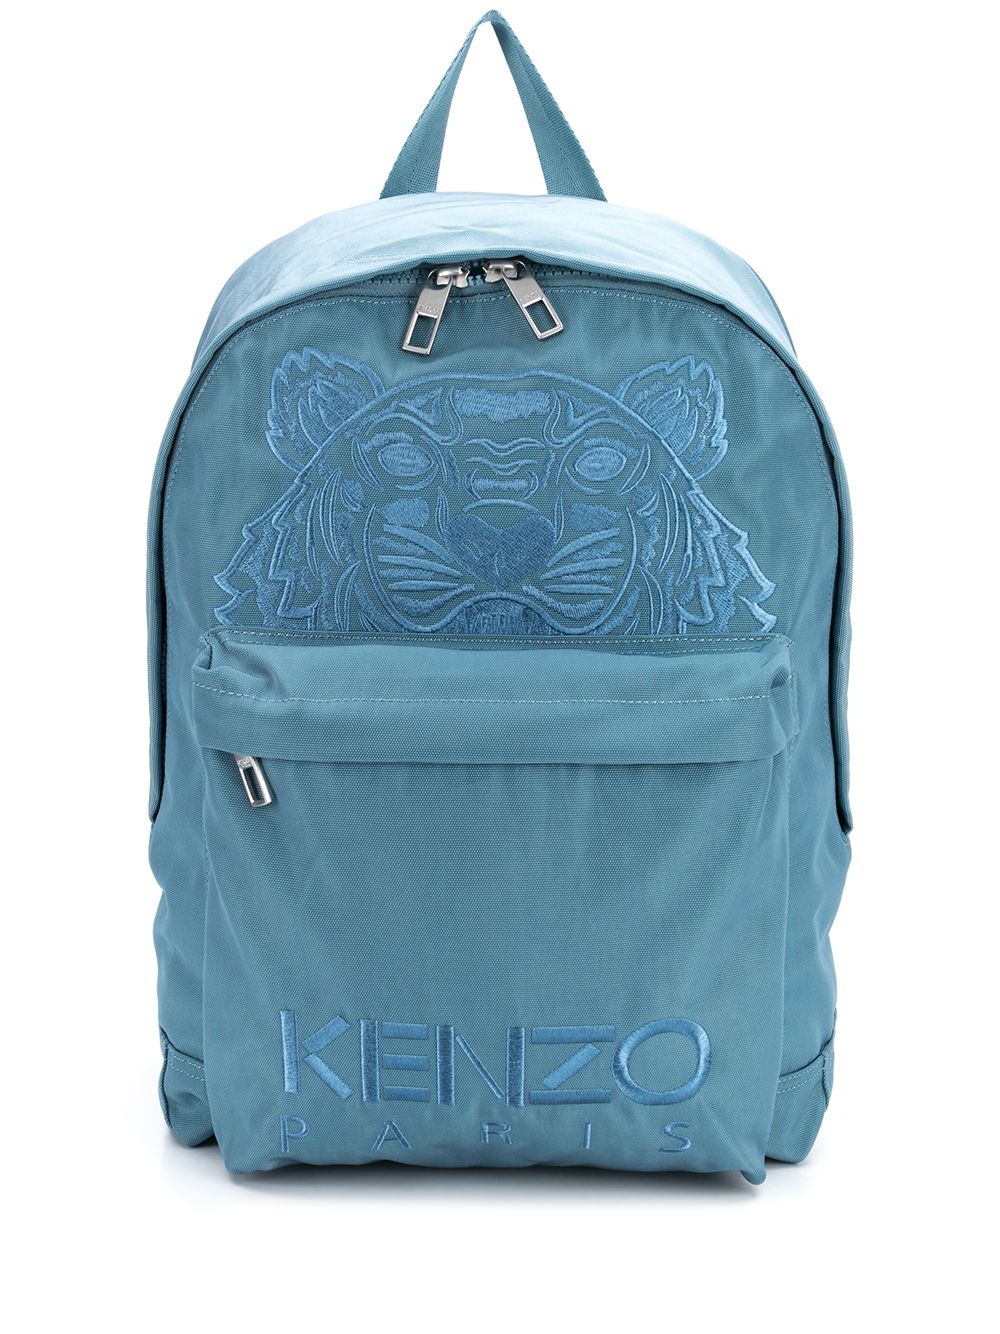 фото Kenzo рюкзак с вышитым логотипом